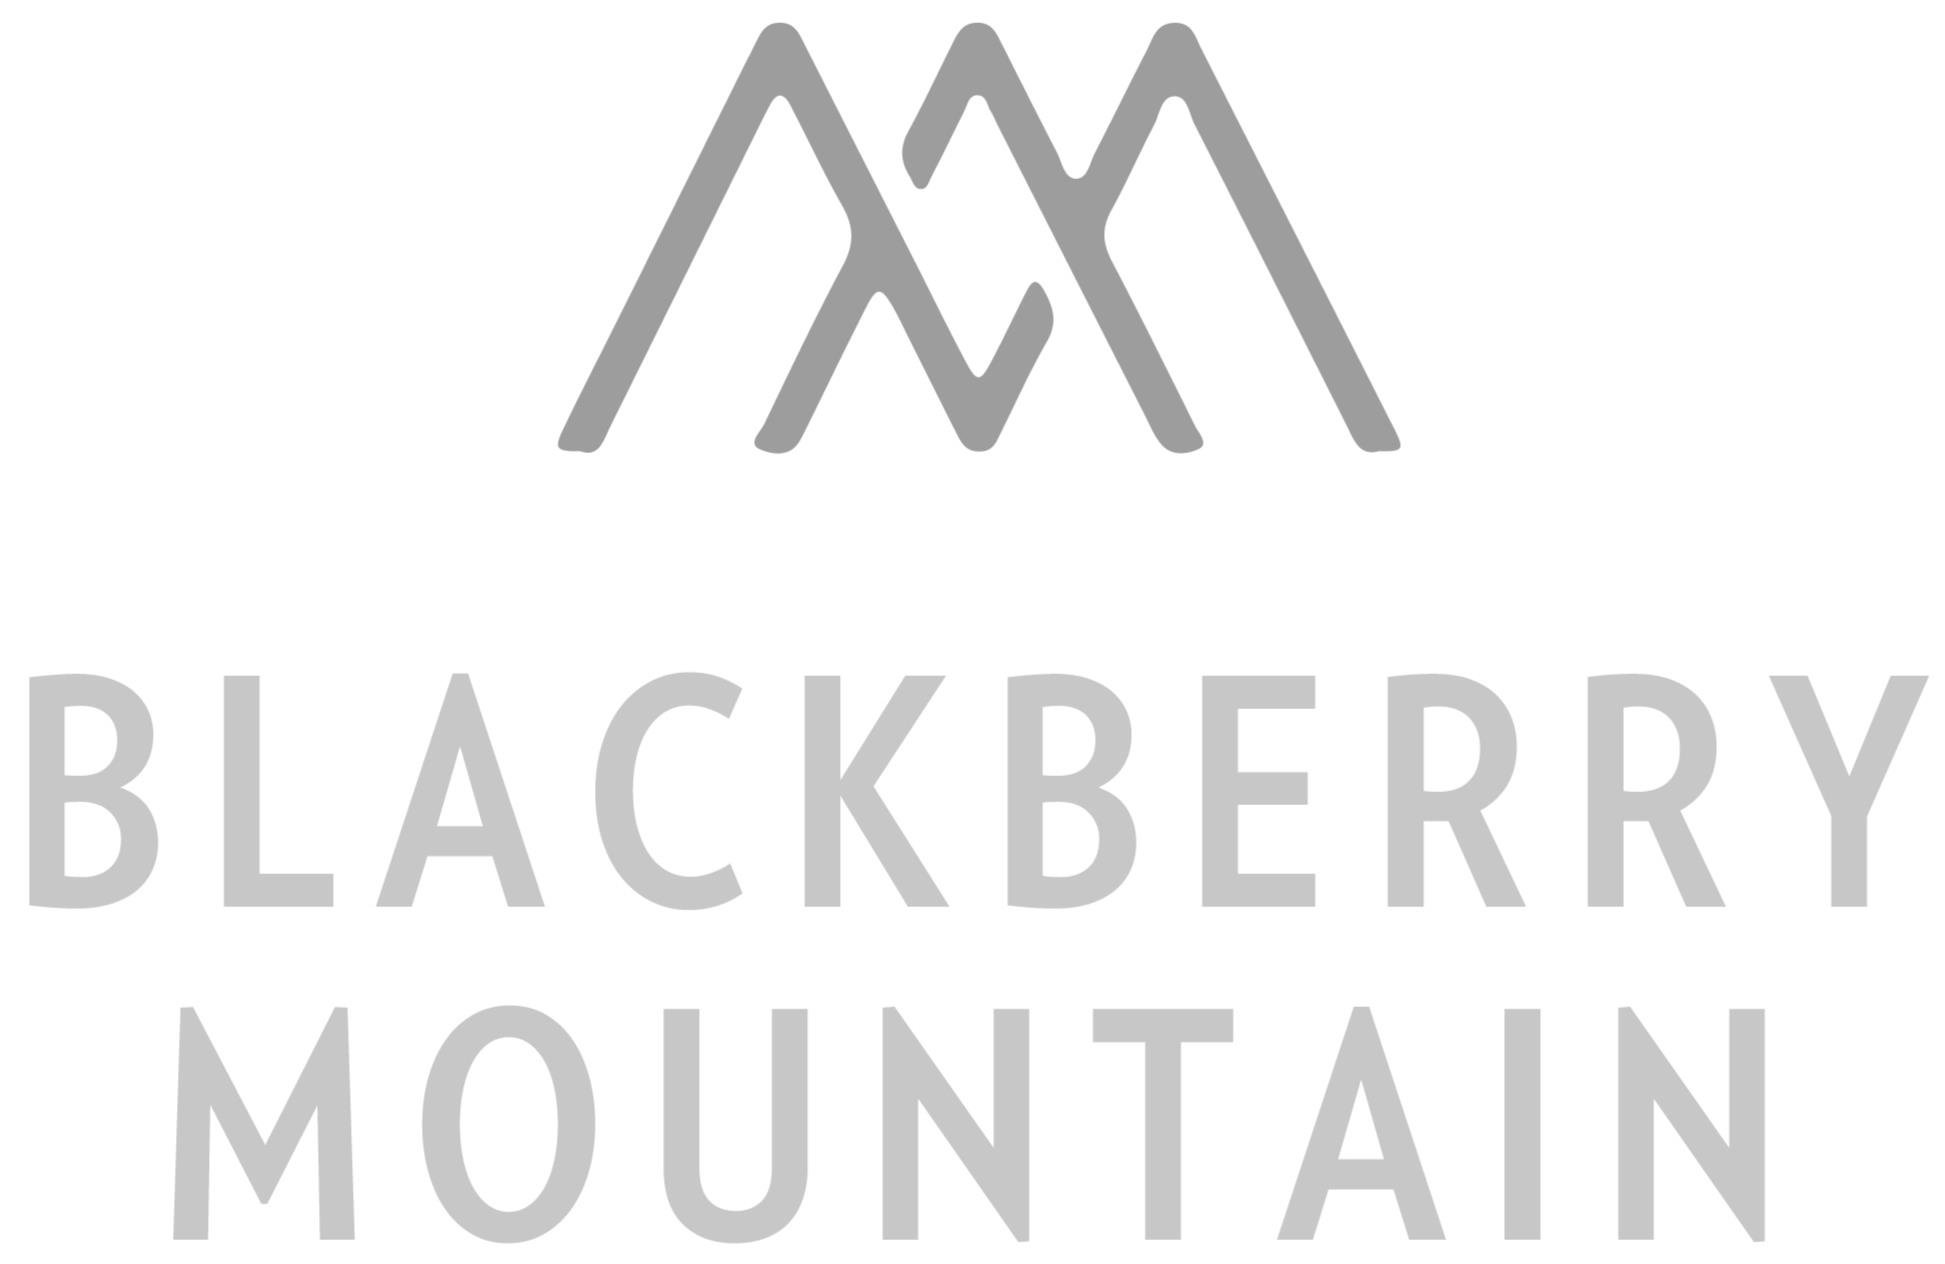 BLACKBERRY MOUNTAIN